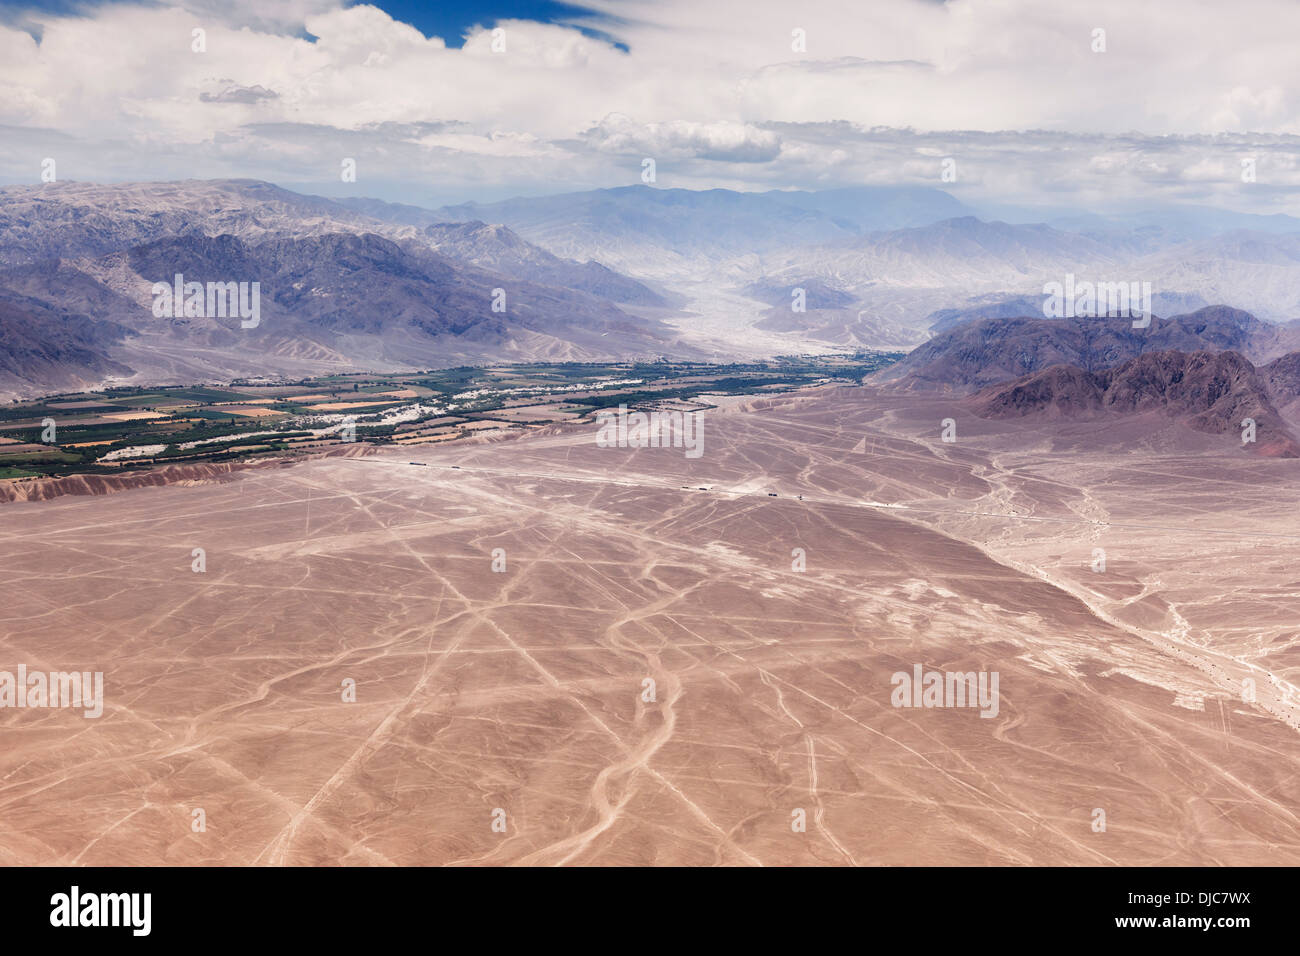 Aerial view of the Nazca Lines, Nazca, Peru. Stock Photo